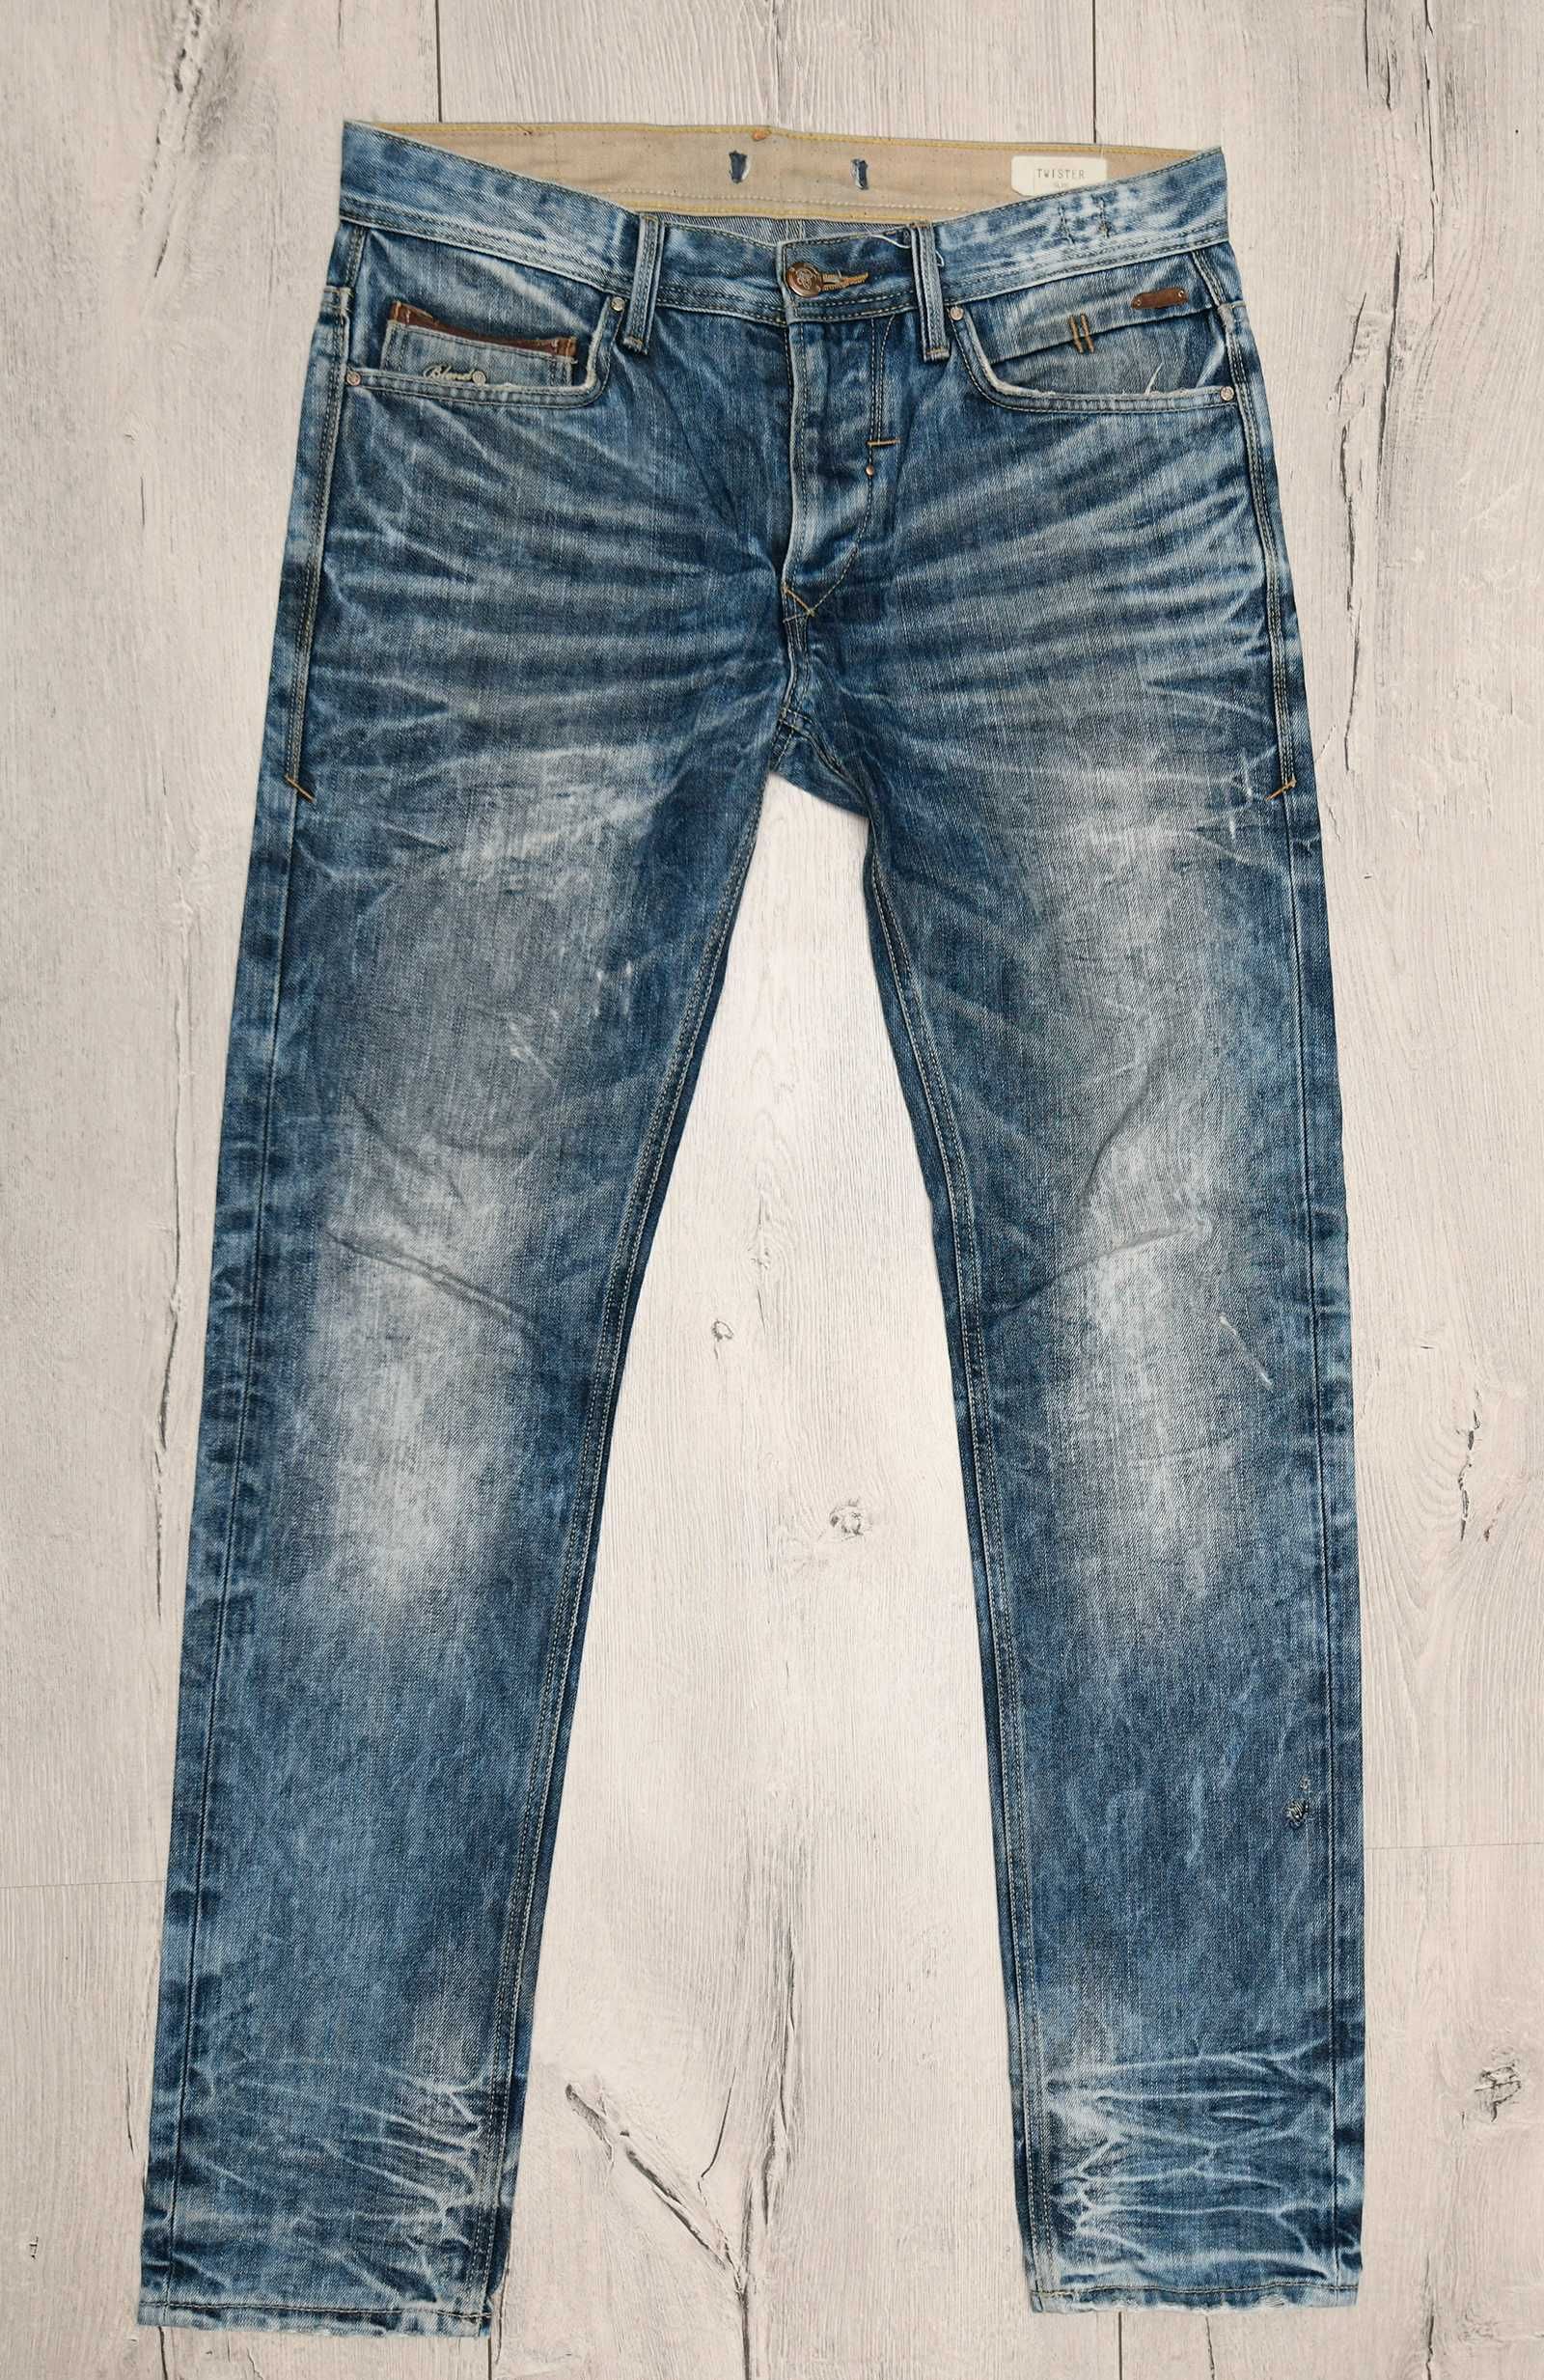 Spodnie jeansowe marki BLEND Twister Slim vintage r.32/34